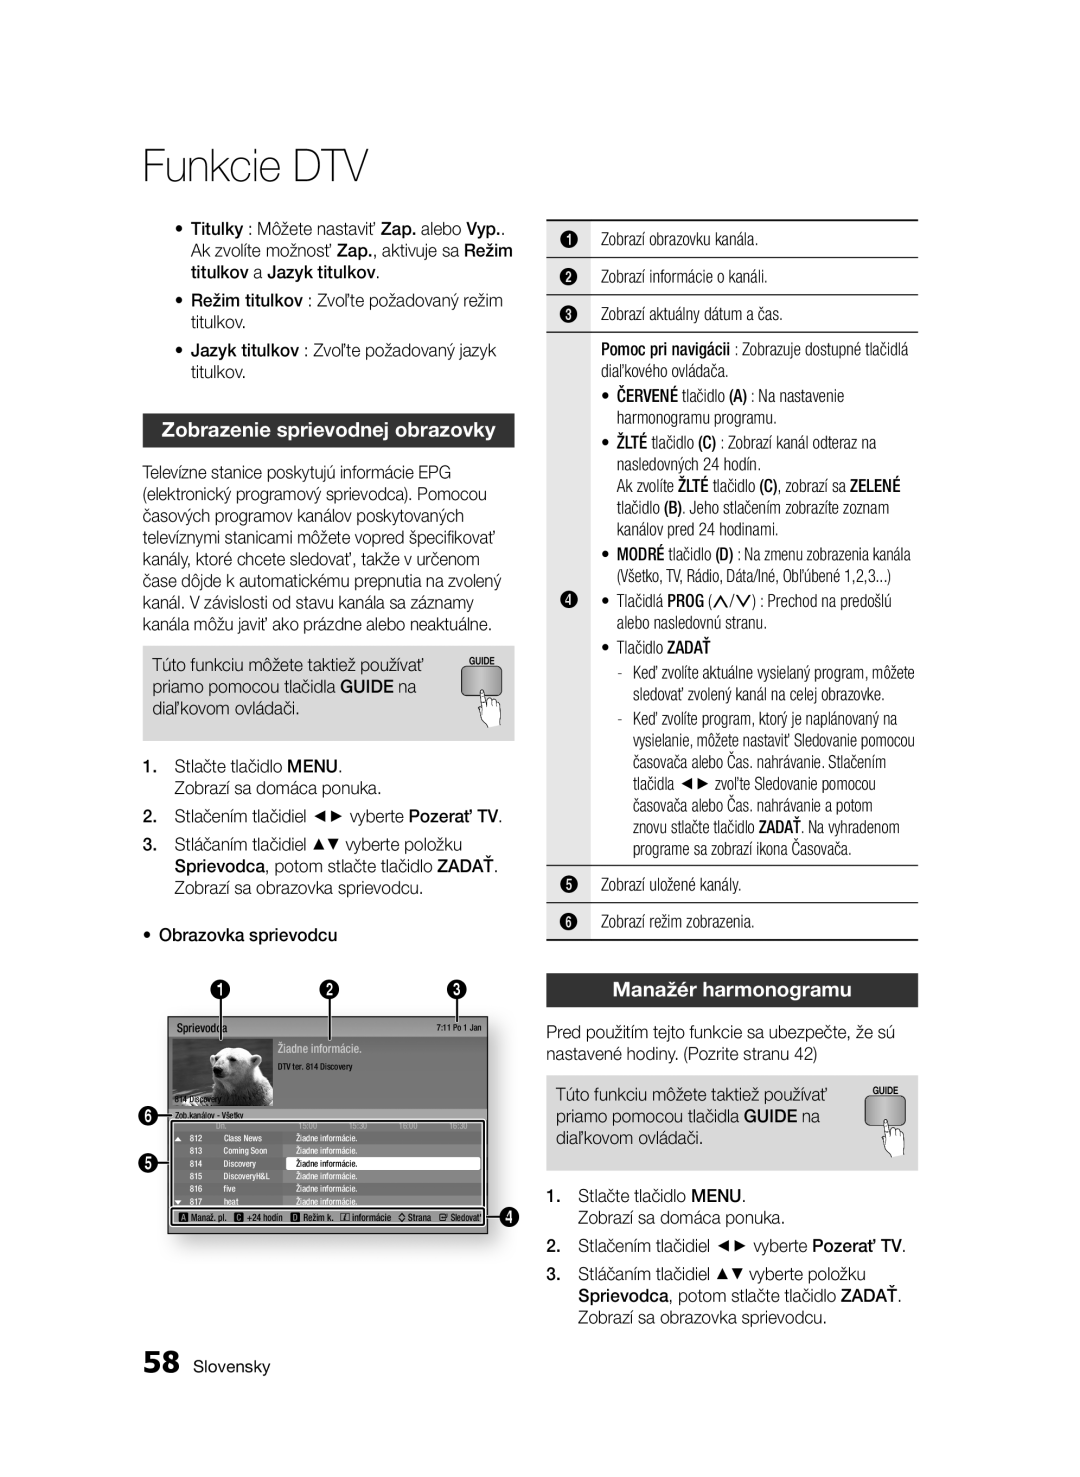 Samsung BD-E6300/EN manual Zobrazenie sprievodnej obrazovky, Manažér harmonogramu, Funkcie DTV, Slovensky 